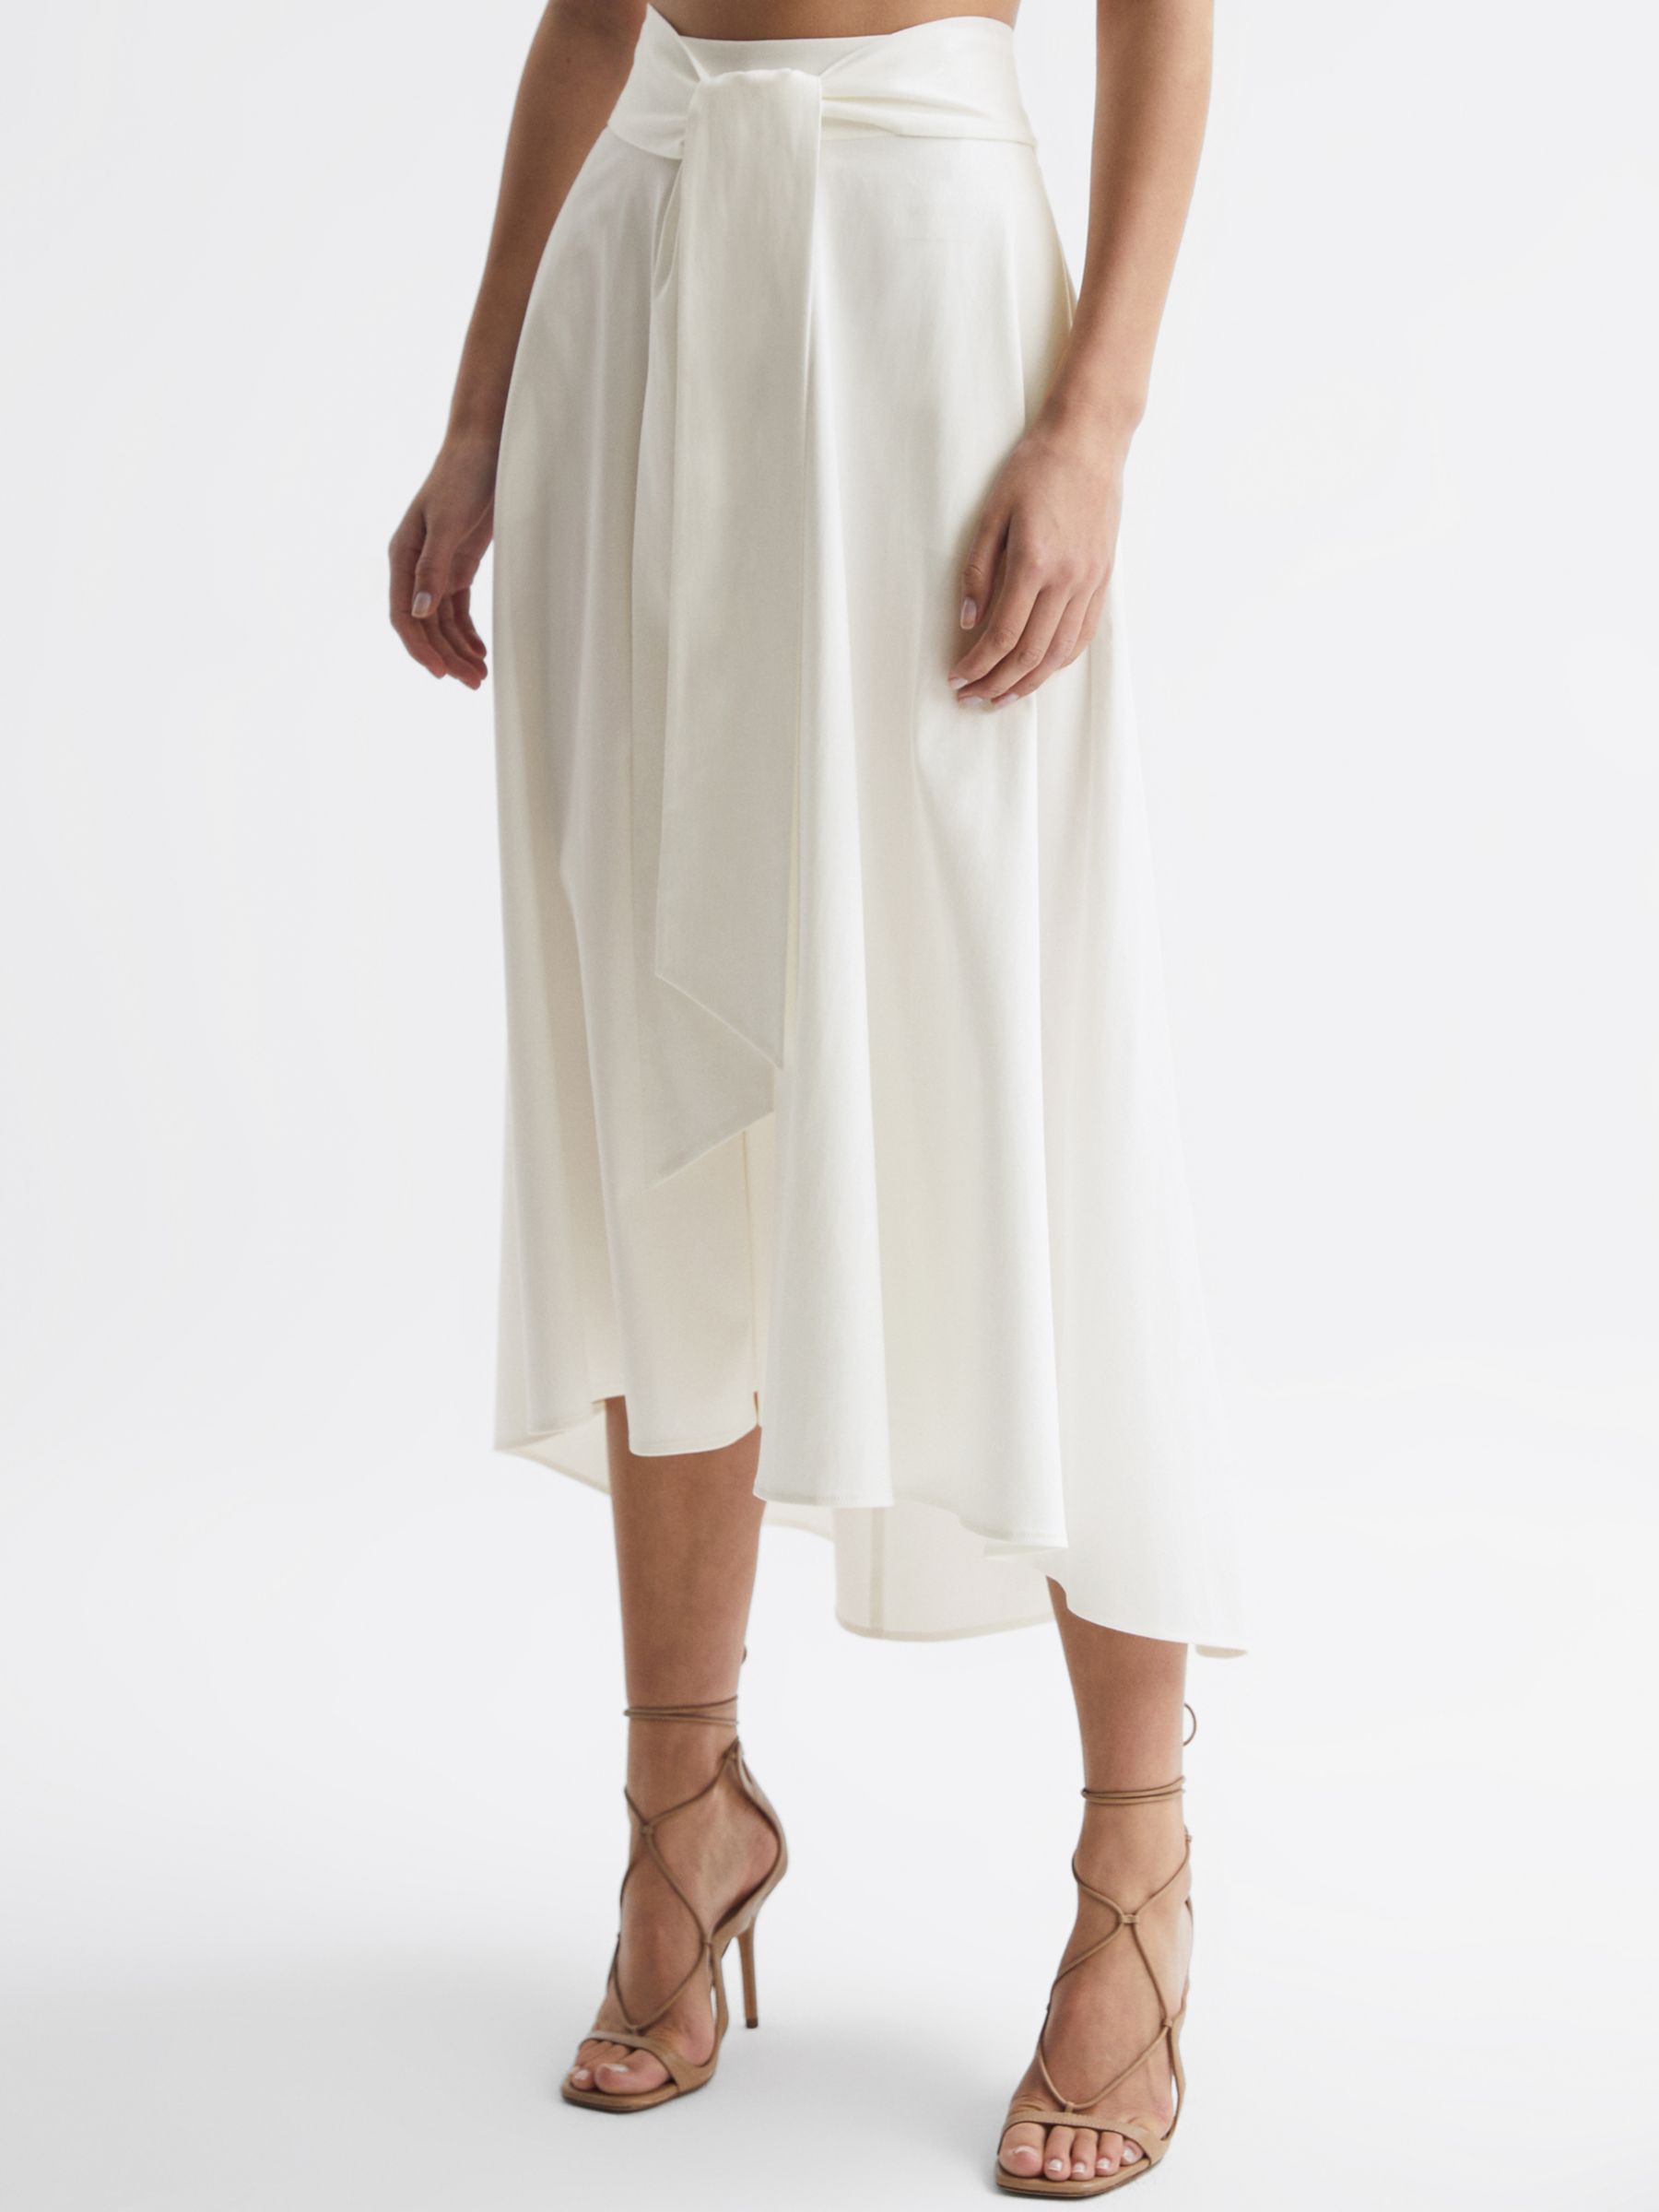 Reiss Rebecca Midi Flared Skirt, White, 6